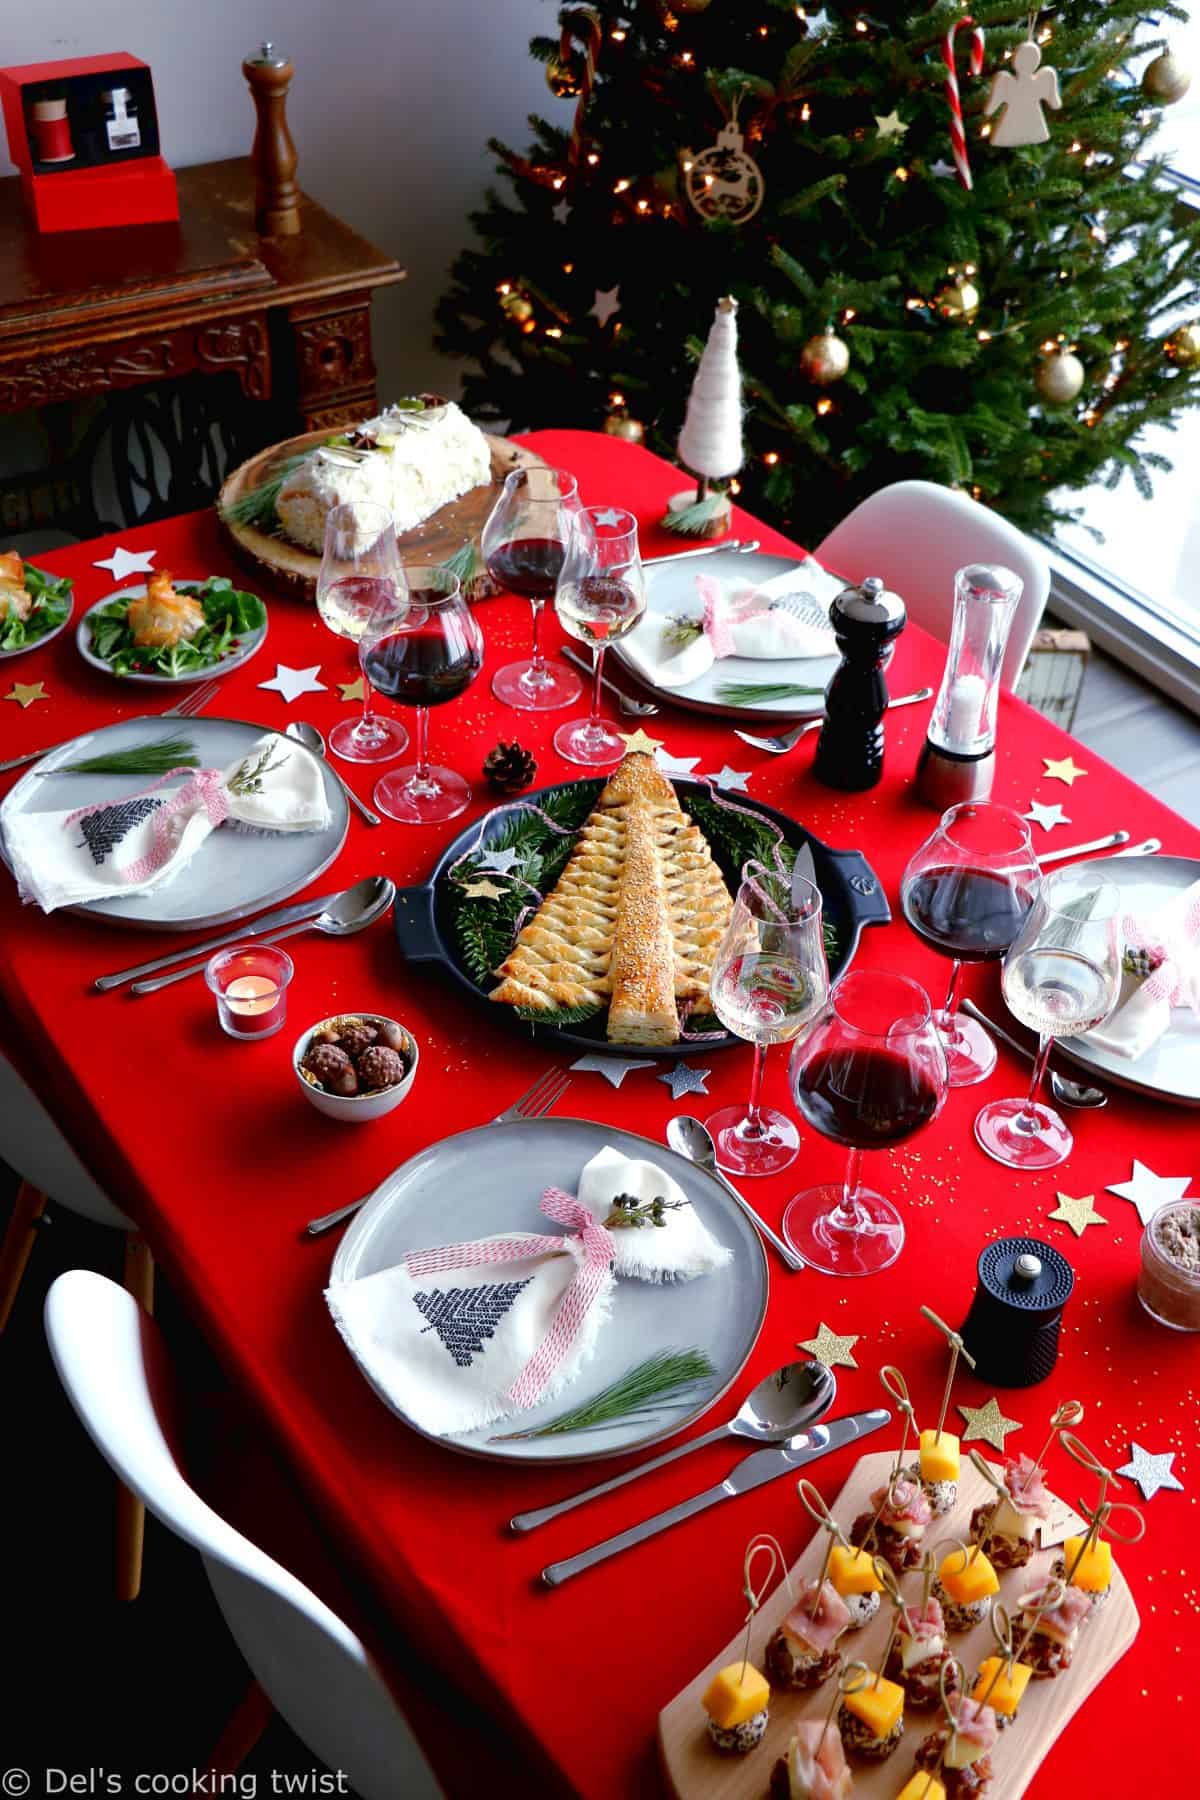 Découvrez ma table de Noël avec Peugeot Saveurs avec des recettes gourmandes et festives, ainsi que de jolies idées de cadeaux.